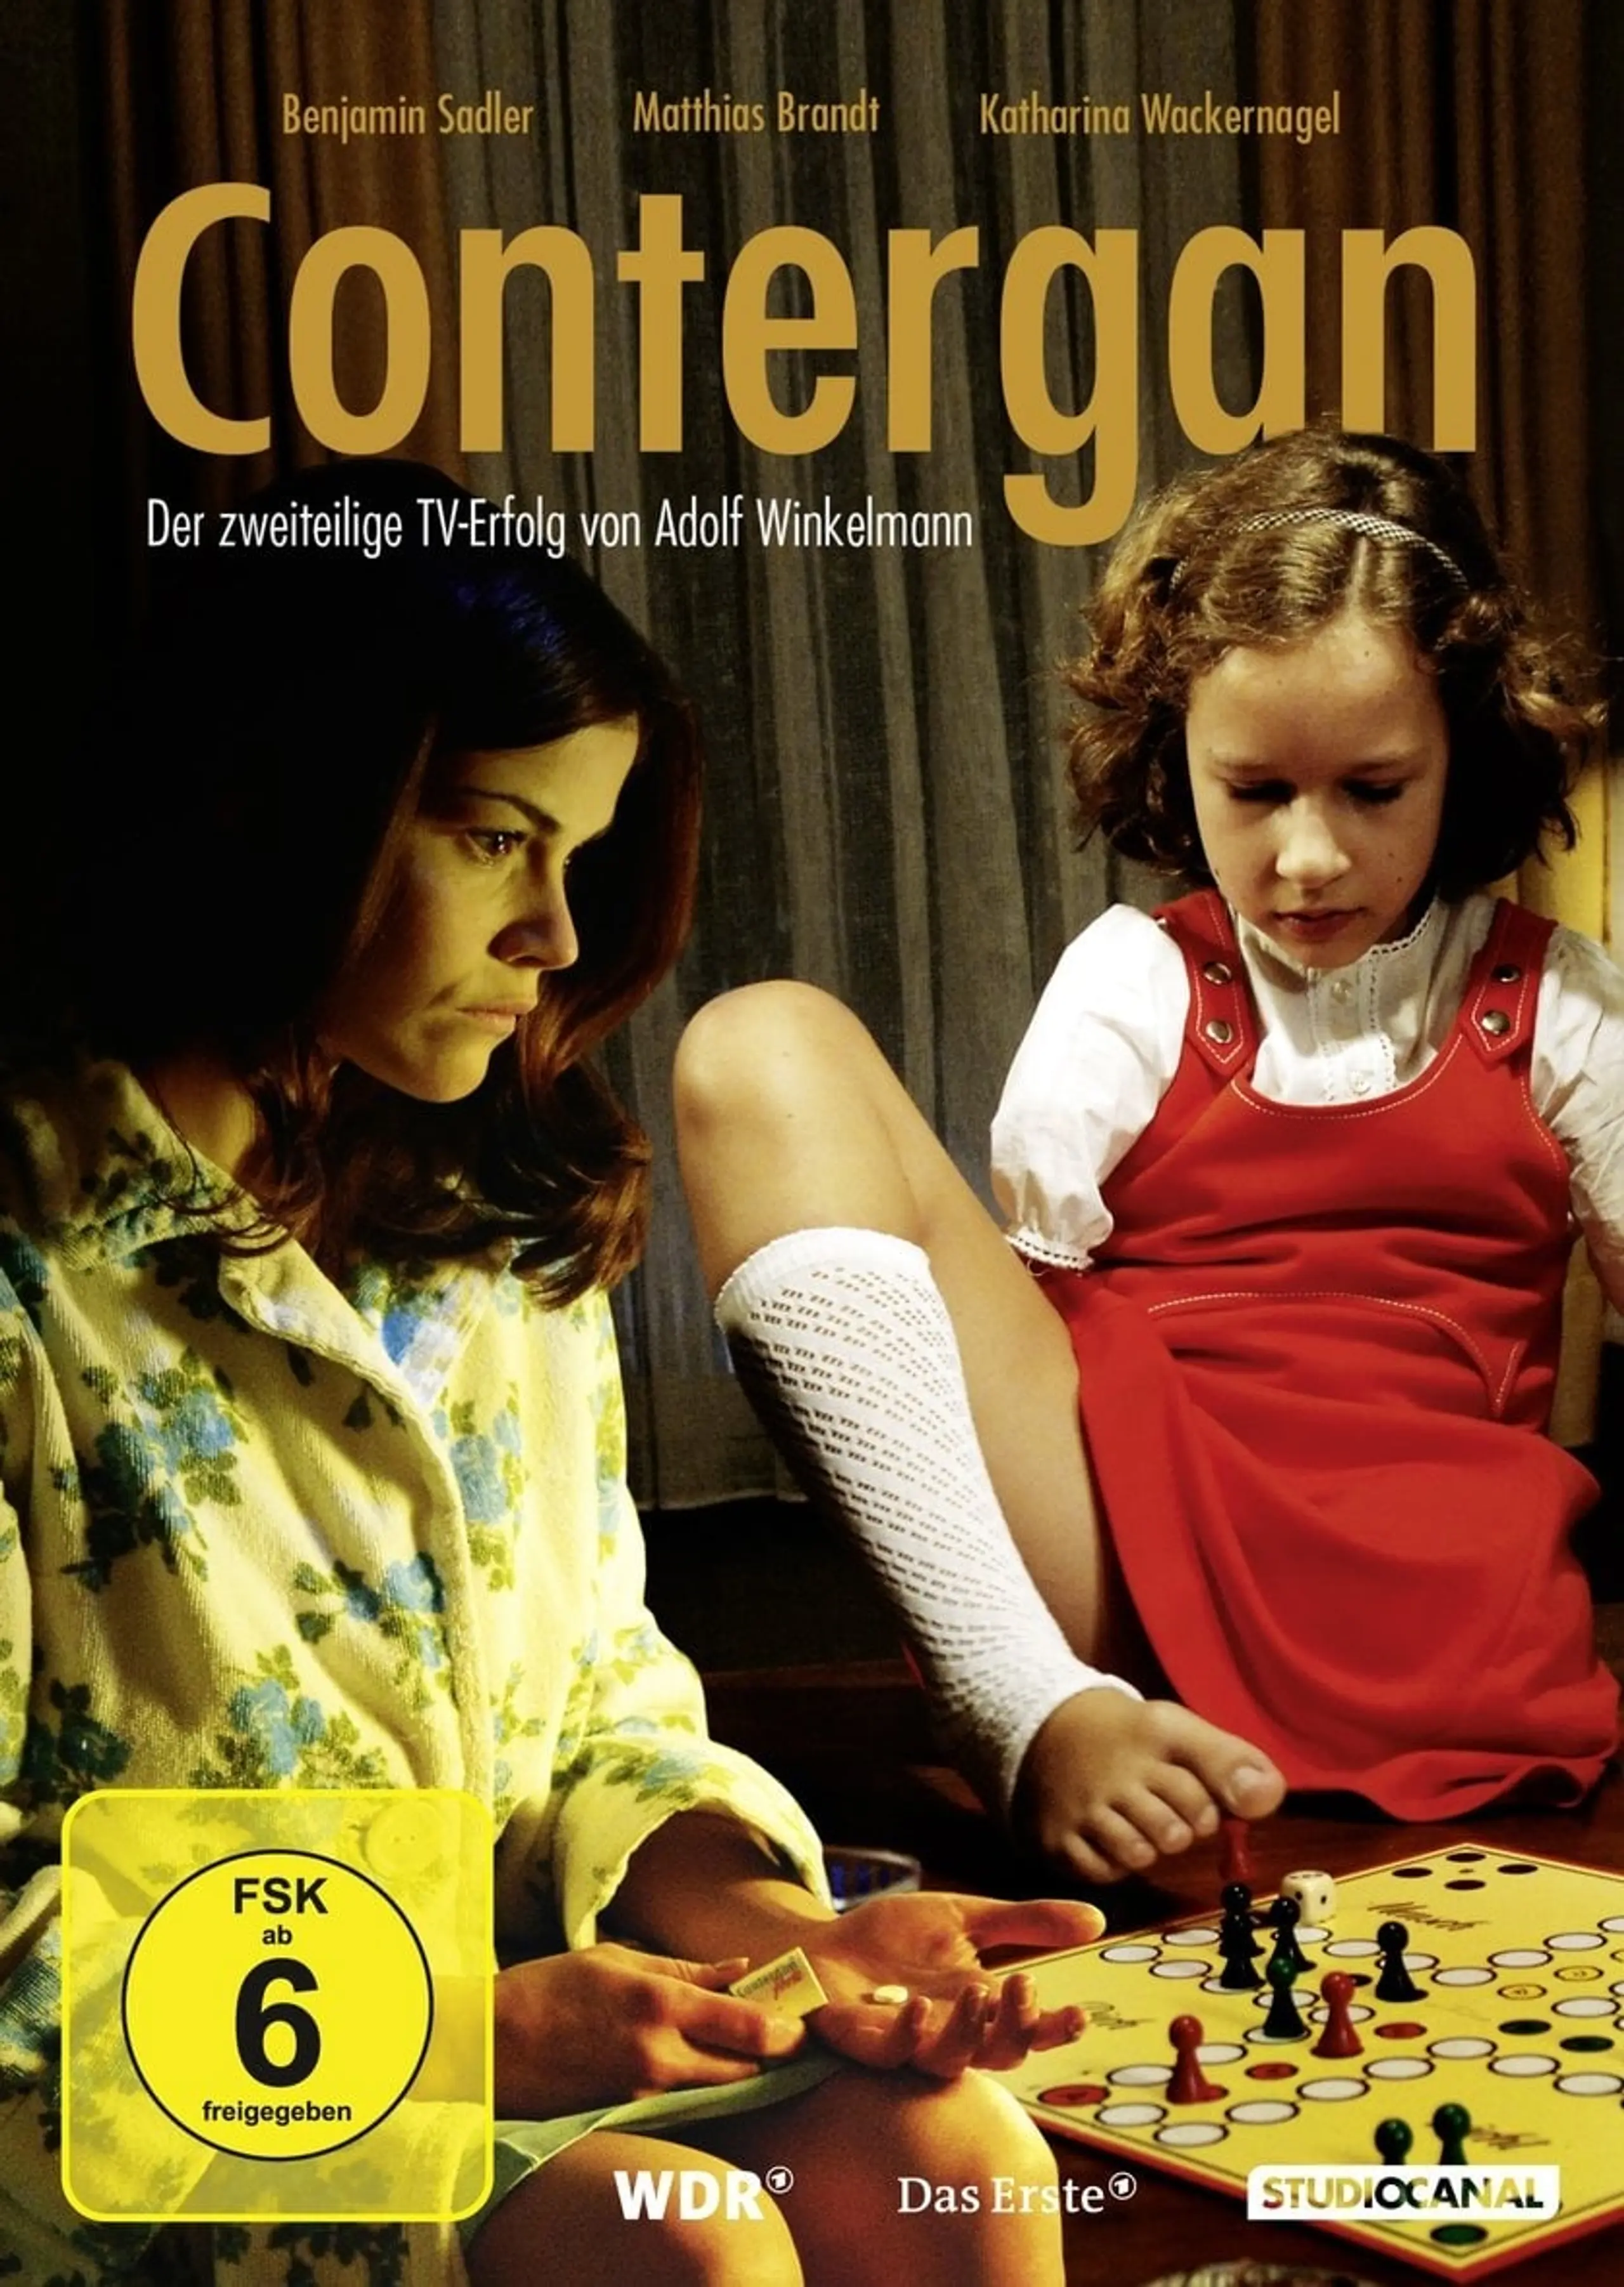 Contergan - Eine einzige Tablette